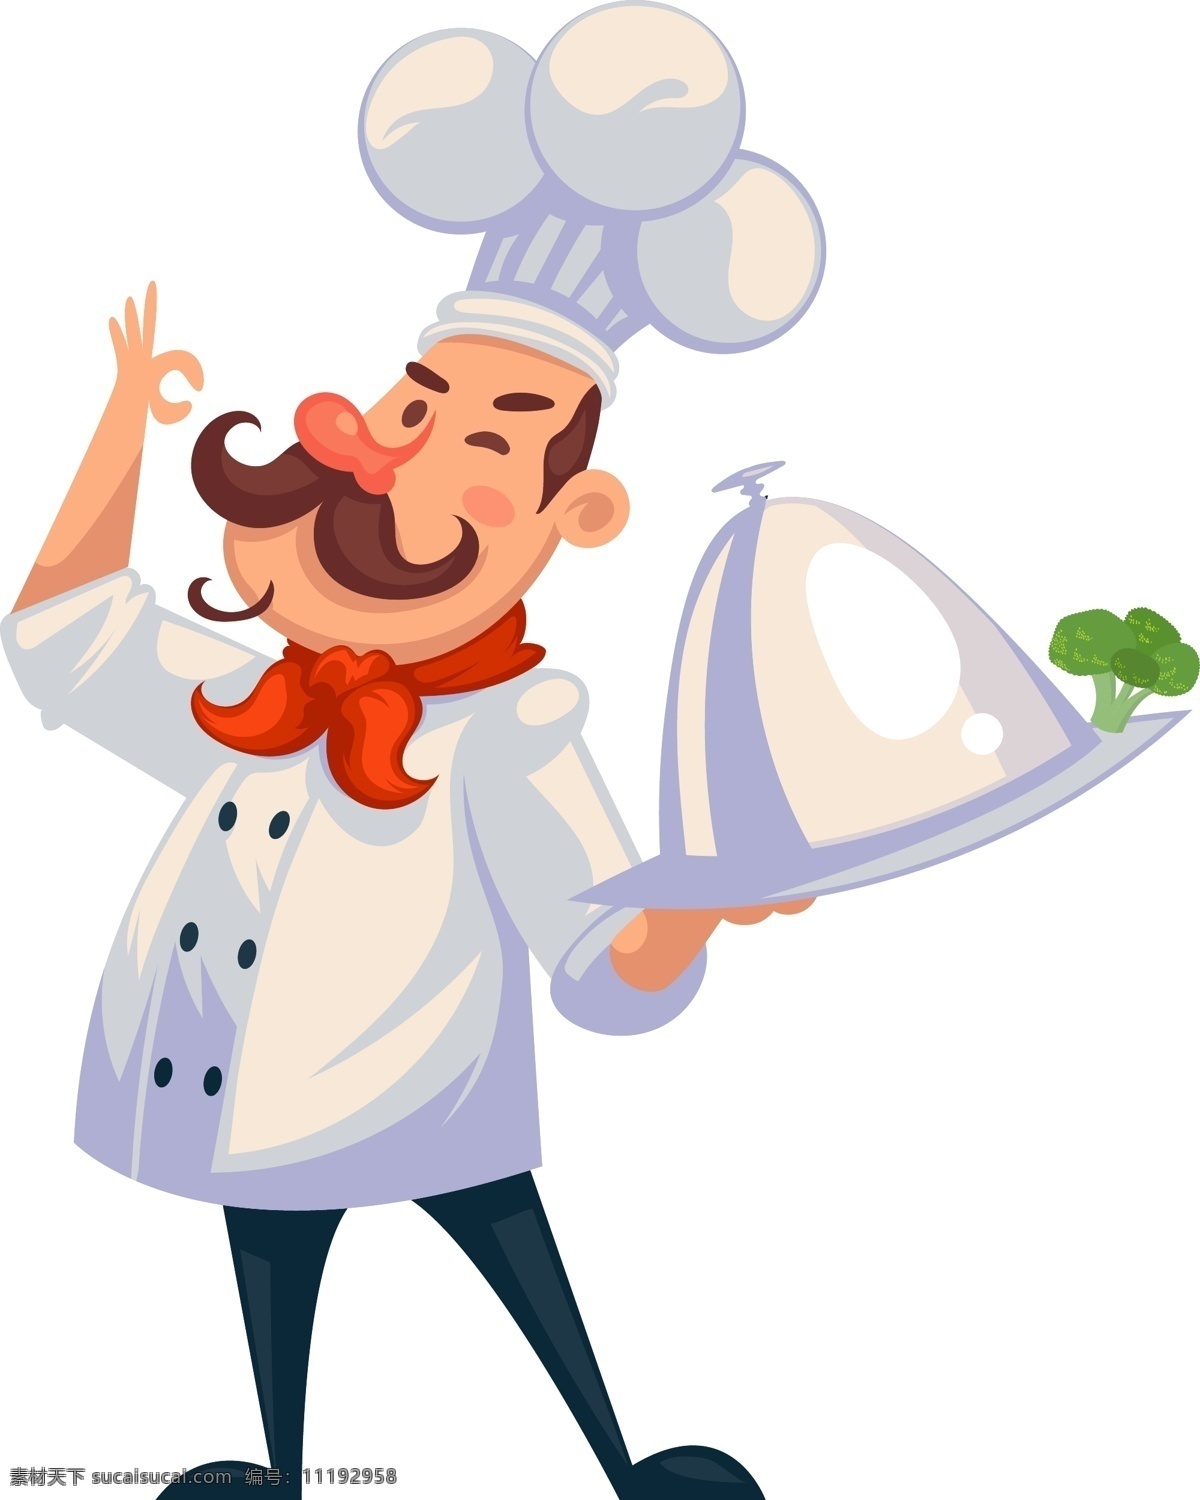 卡通厨师插画 厨师 厨子 做饭 烹饪 卡通人物 人物图库 职业人物